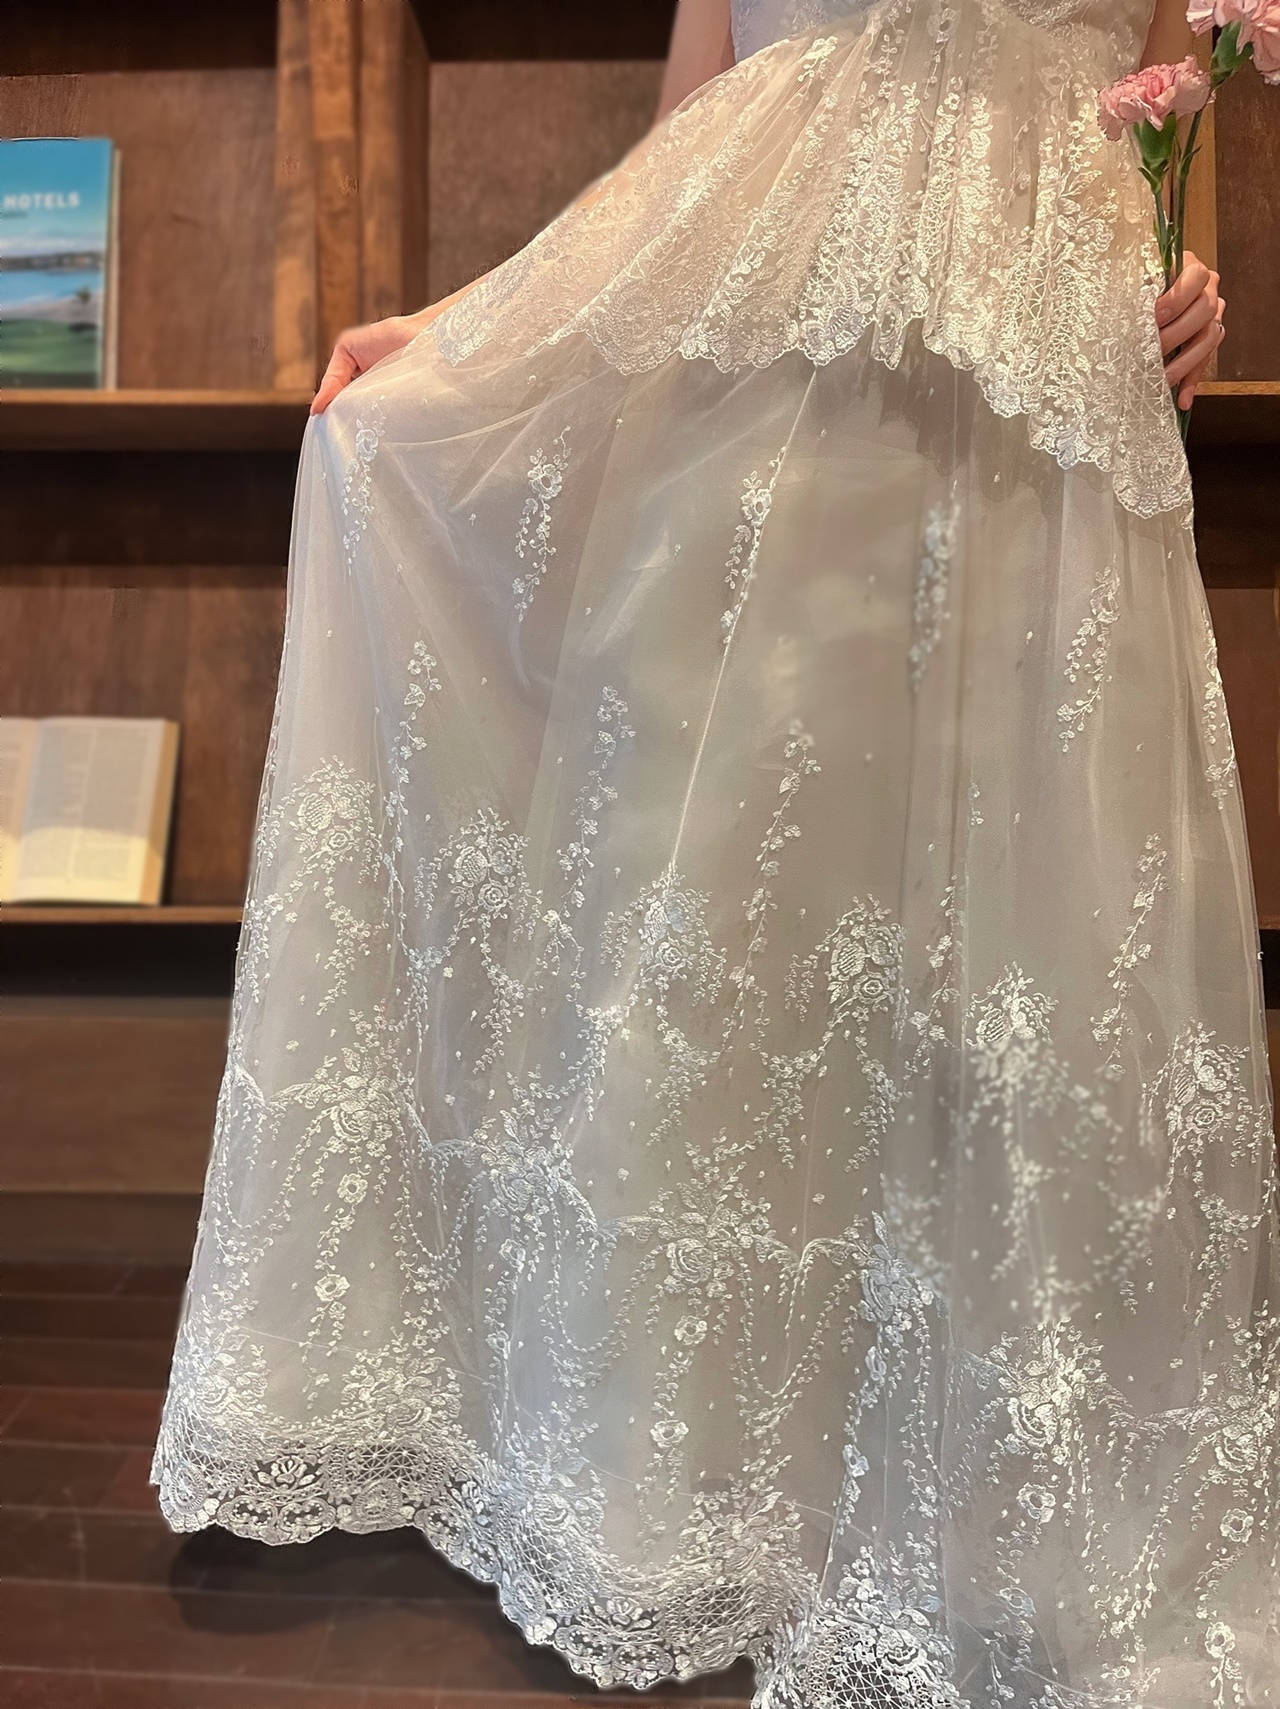 トリート福岡でレンタルできるエリザベスフィルモアのウェディングドレスは、ルイガンズのガーデンパーティーにおすすめ